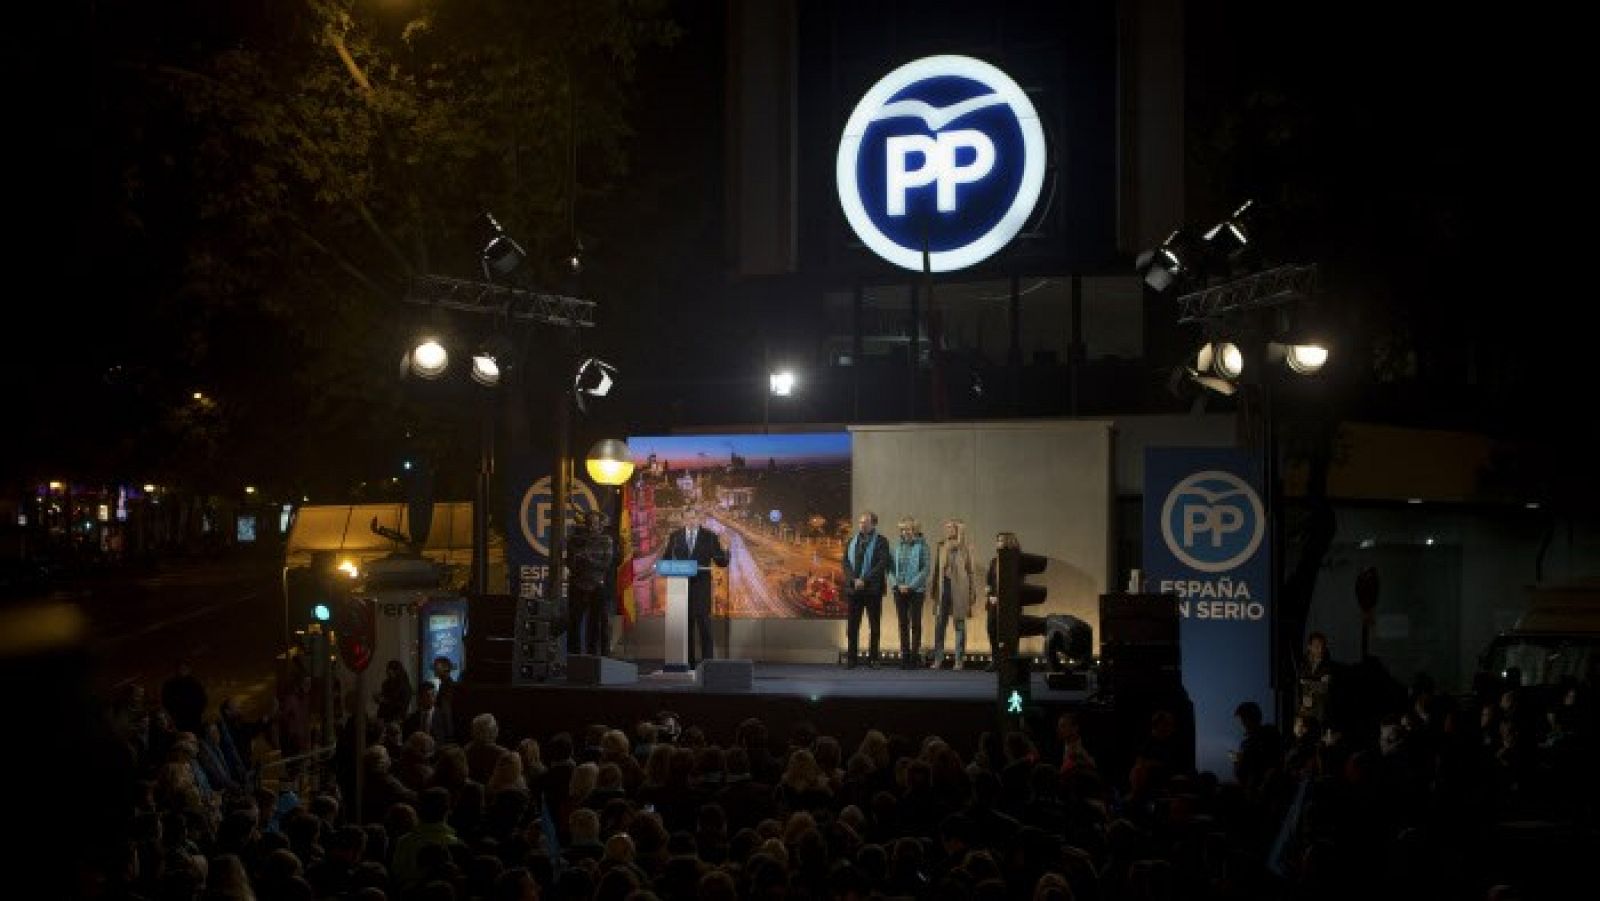 "El PP tiene un modo de actuación que no se quitará jamás"